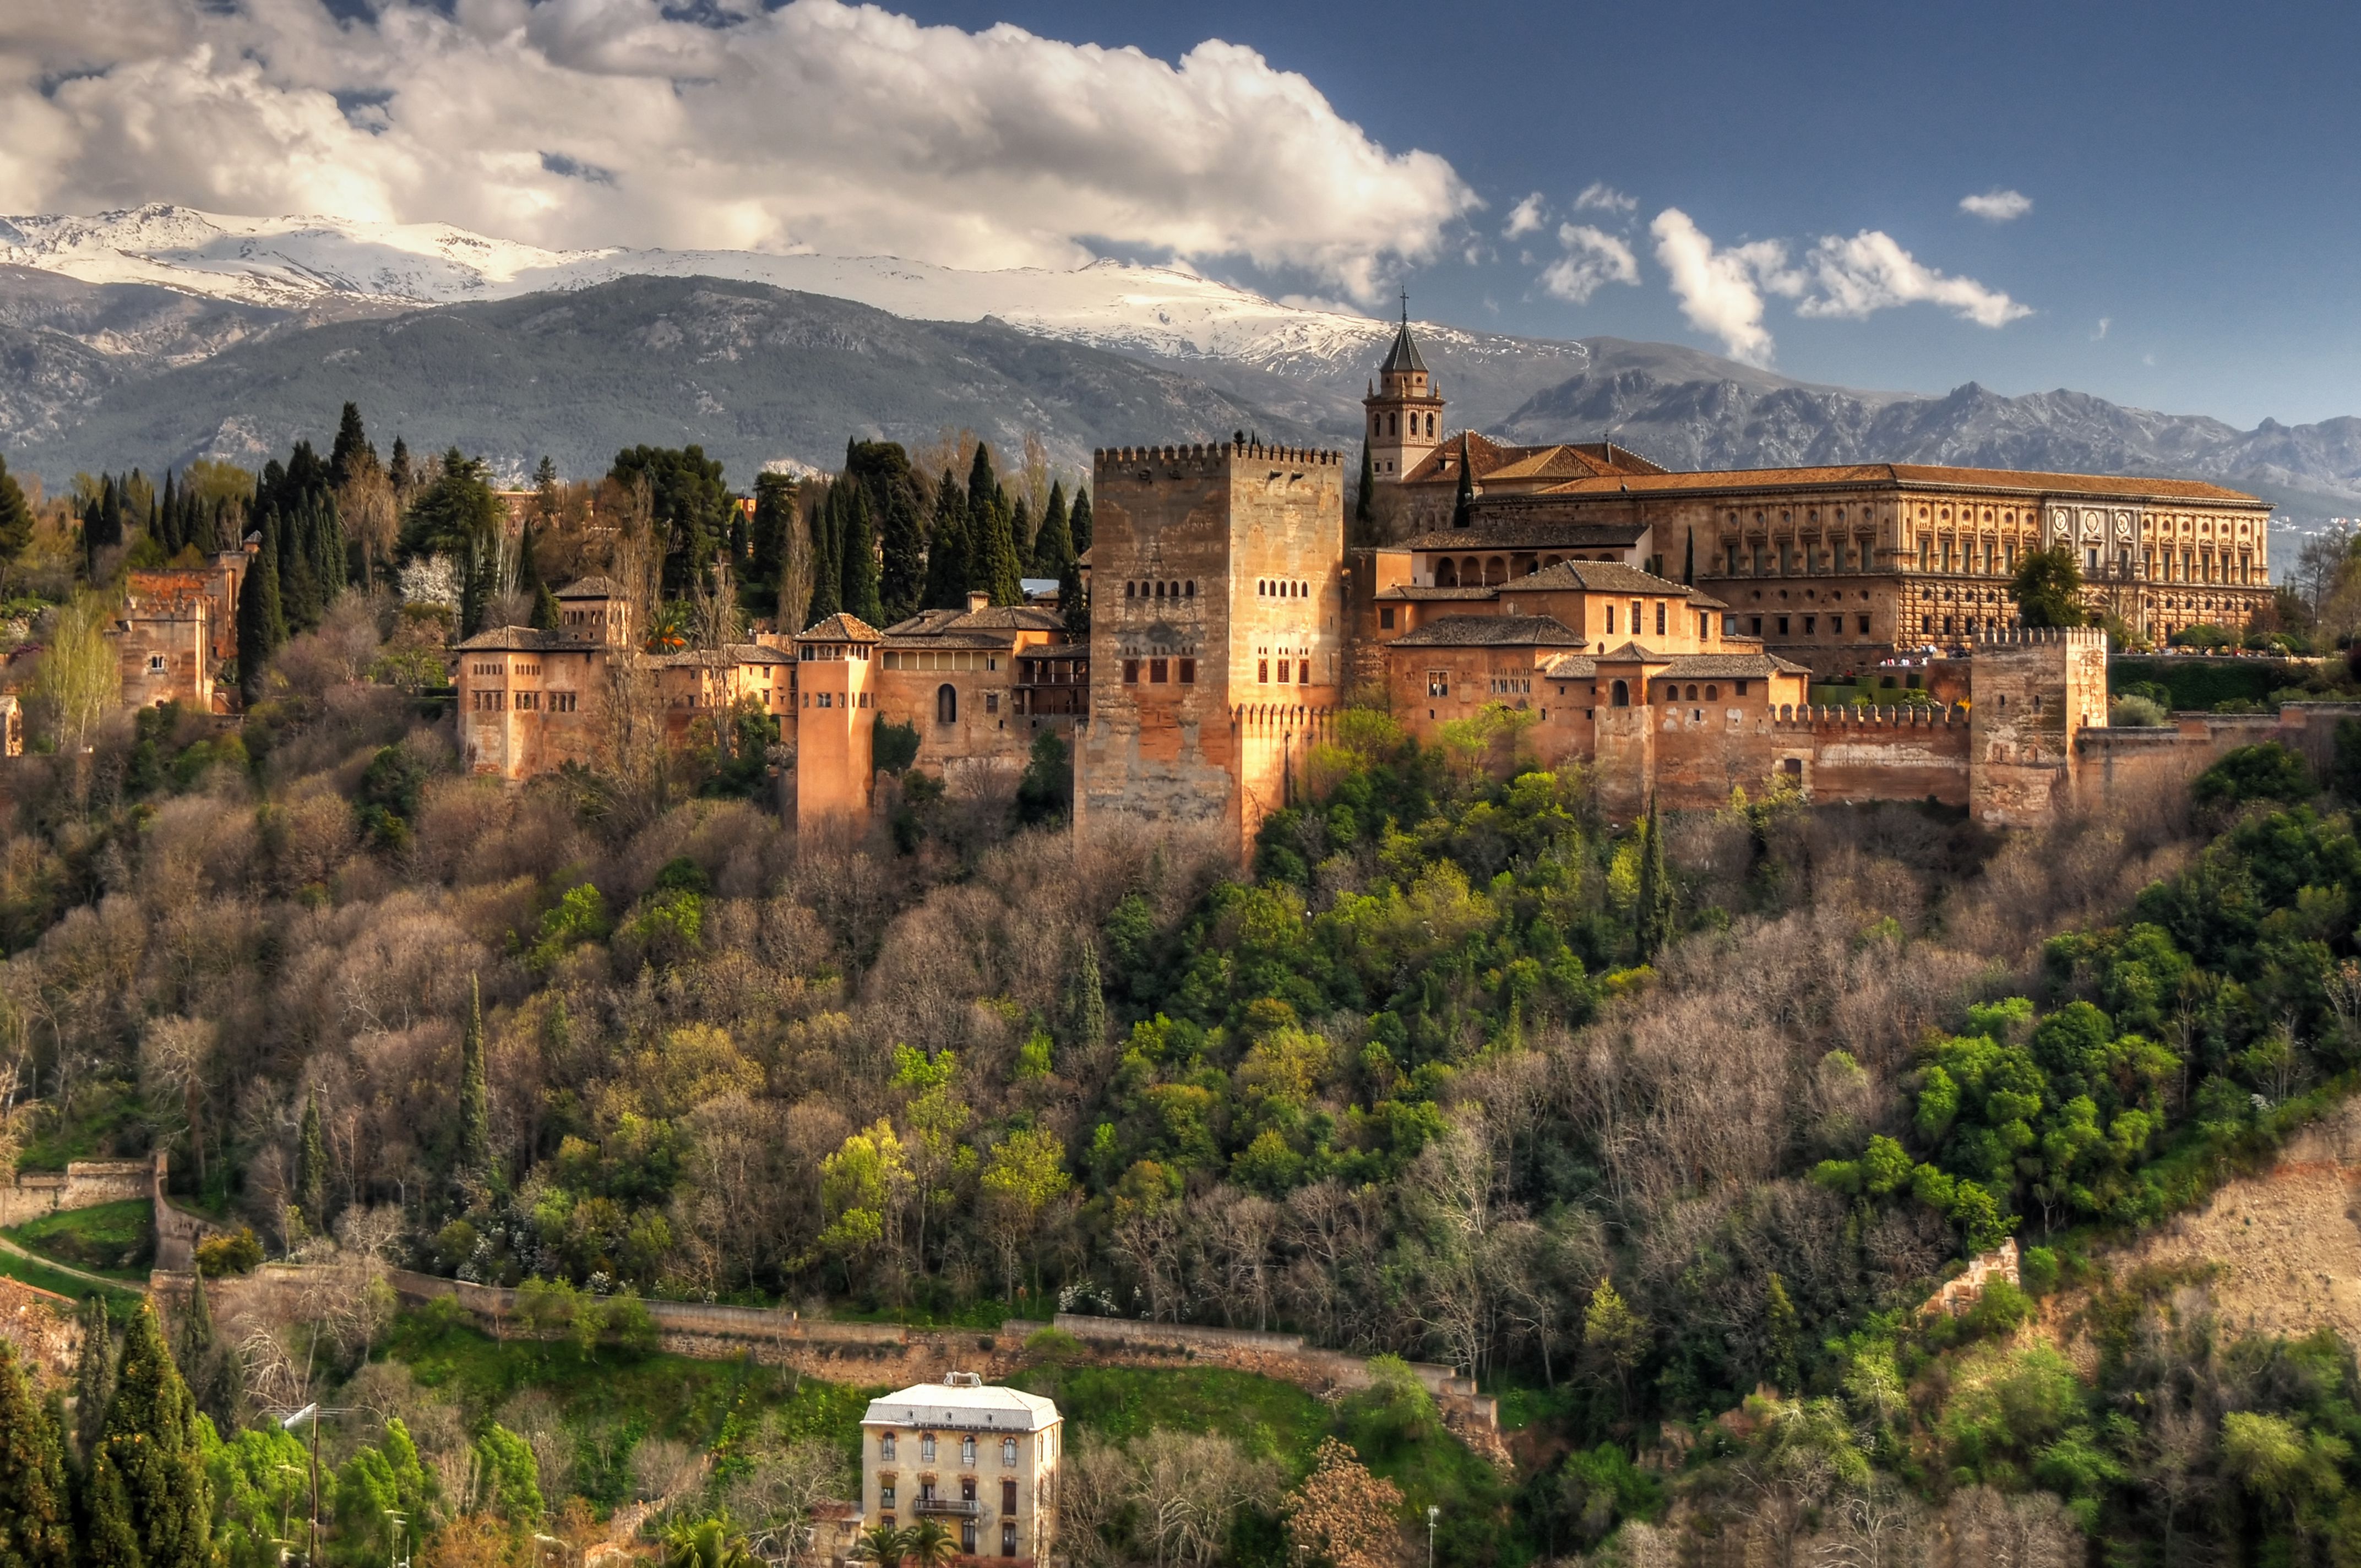 ¡Granada (La Zubia) con Visita a la Alhambra! 2 días y 1 noche en Hotel 3*, con espectaculares Vistas a la Ciudad + Desayunos + Visita guiada!